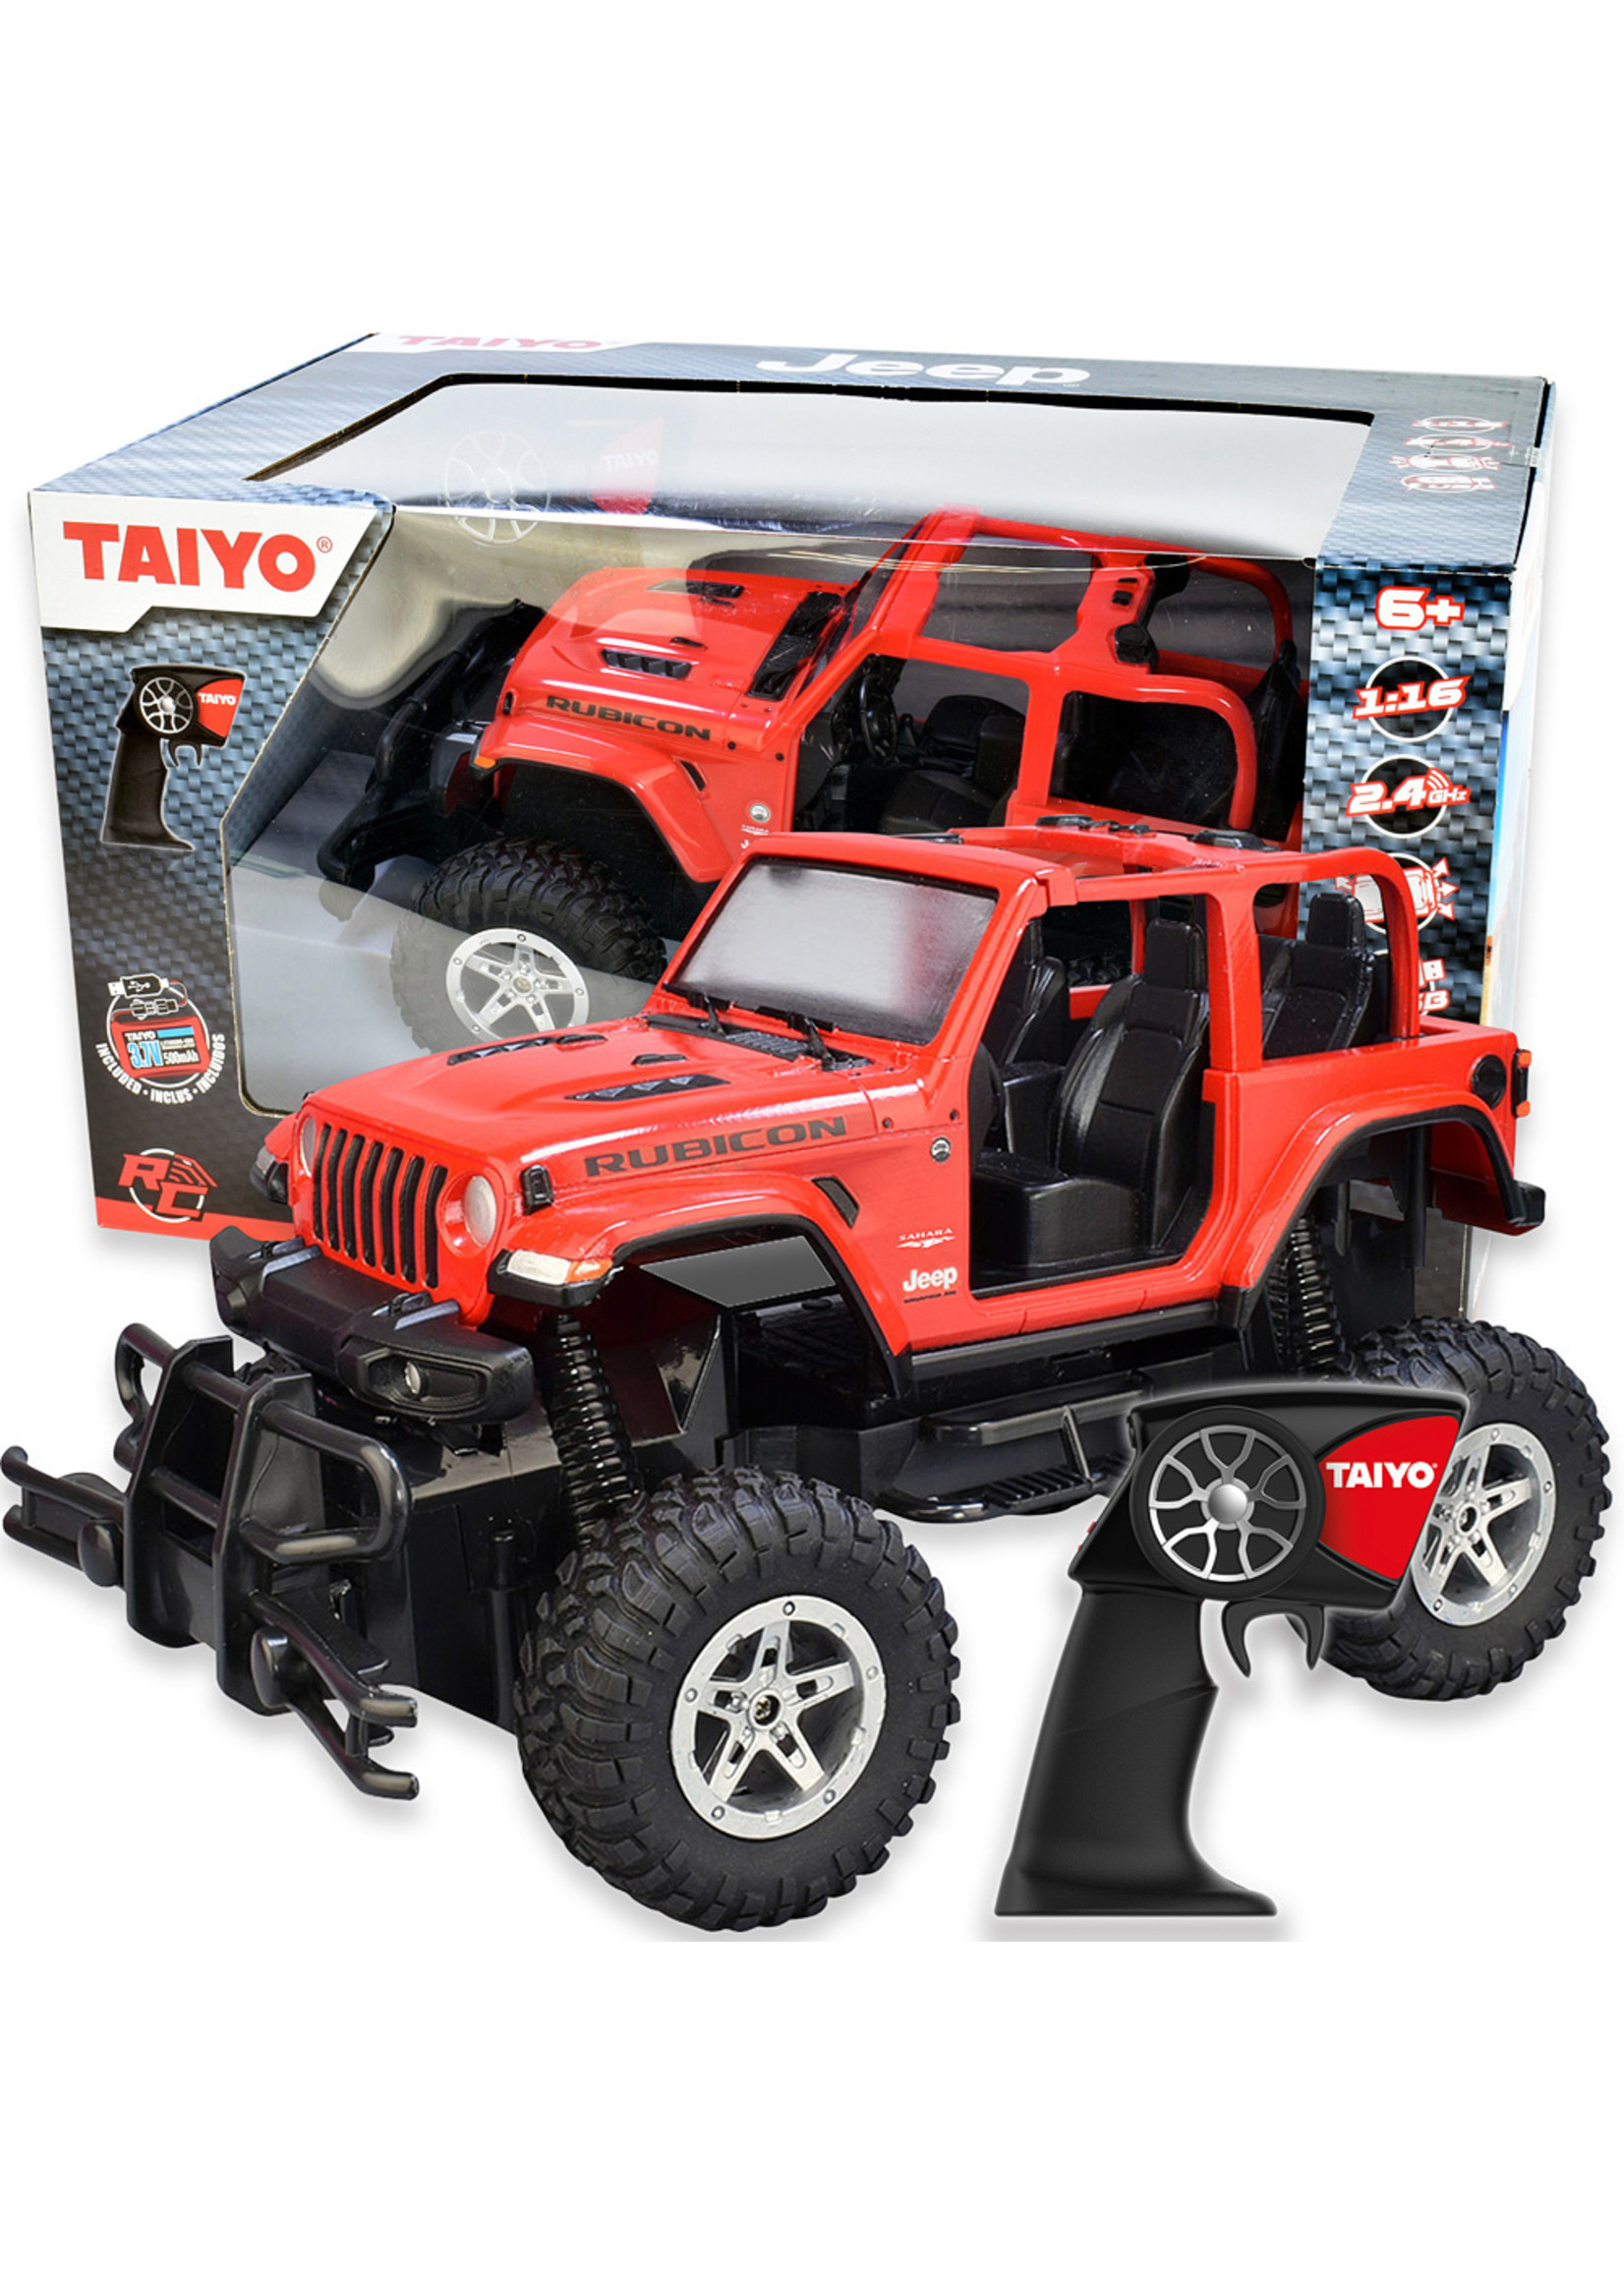 Thin Air 1/16 Taiyo Jeep Wrangler Rubicon RC